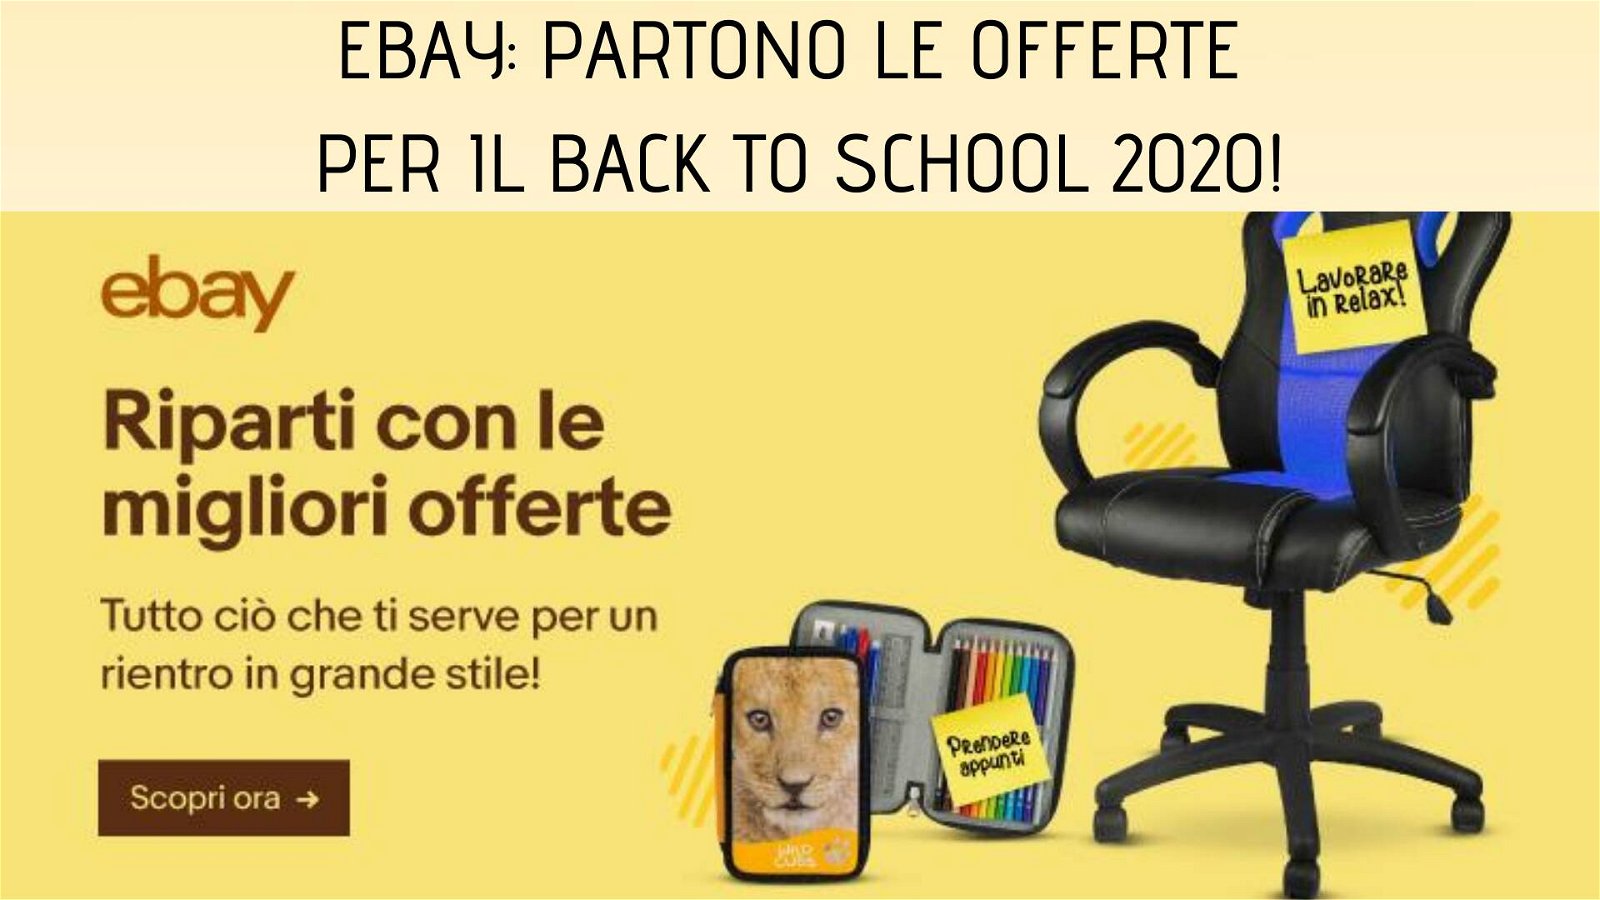 Immagine di eBay: partono le offerte del Back to School 2020!